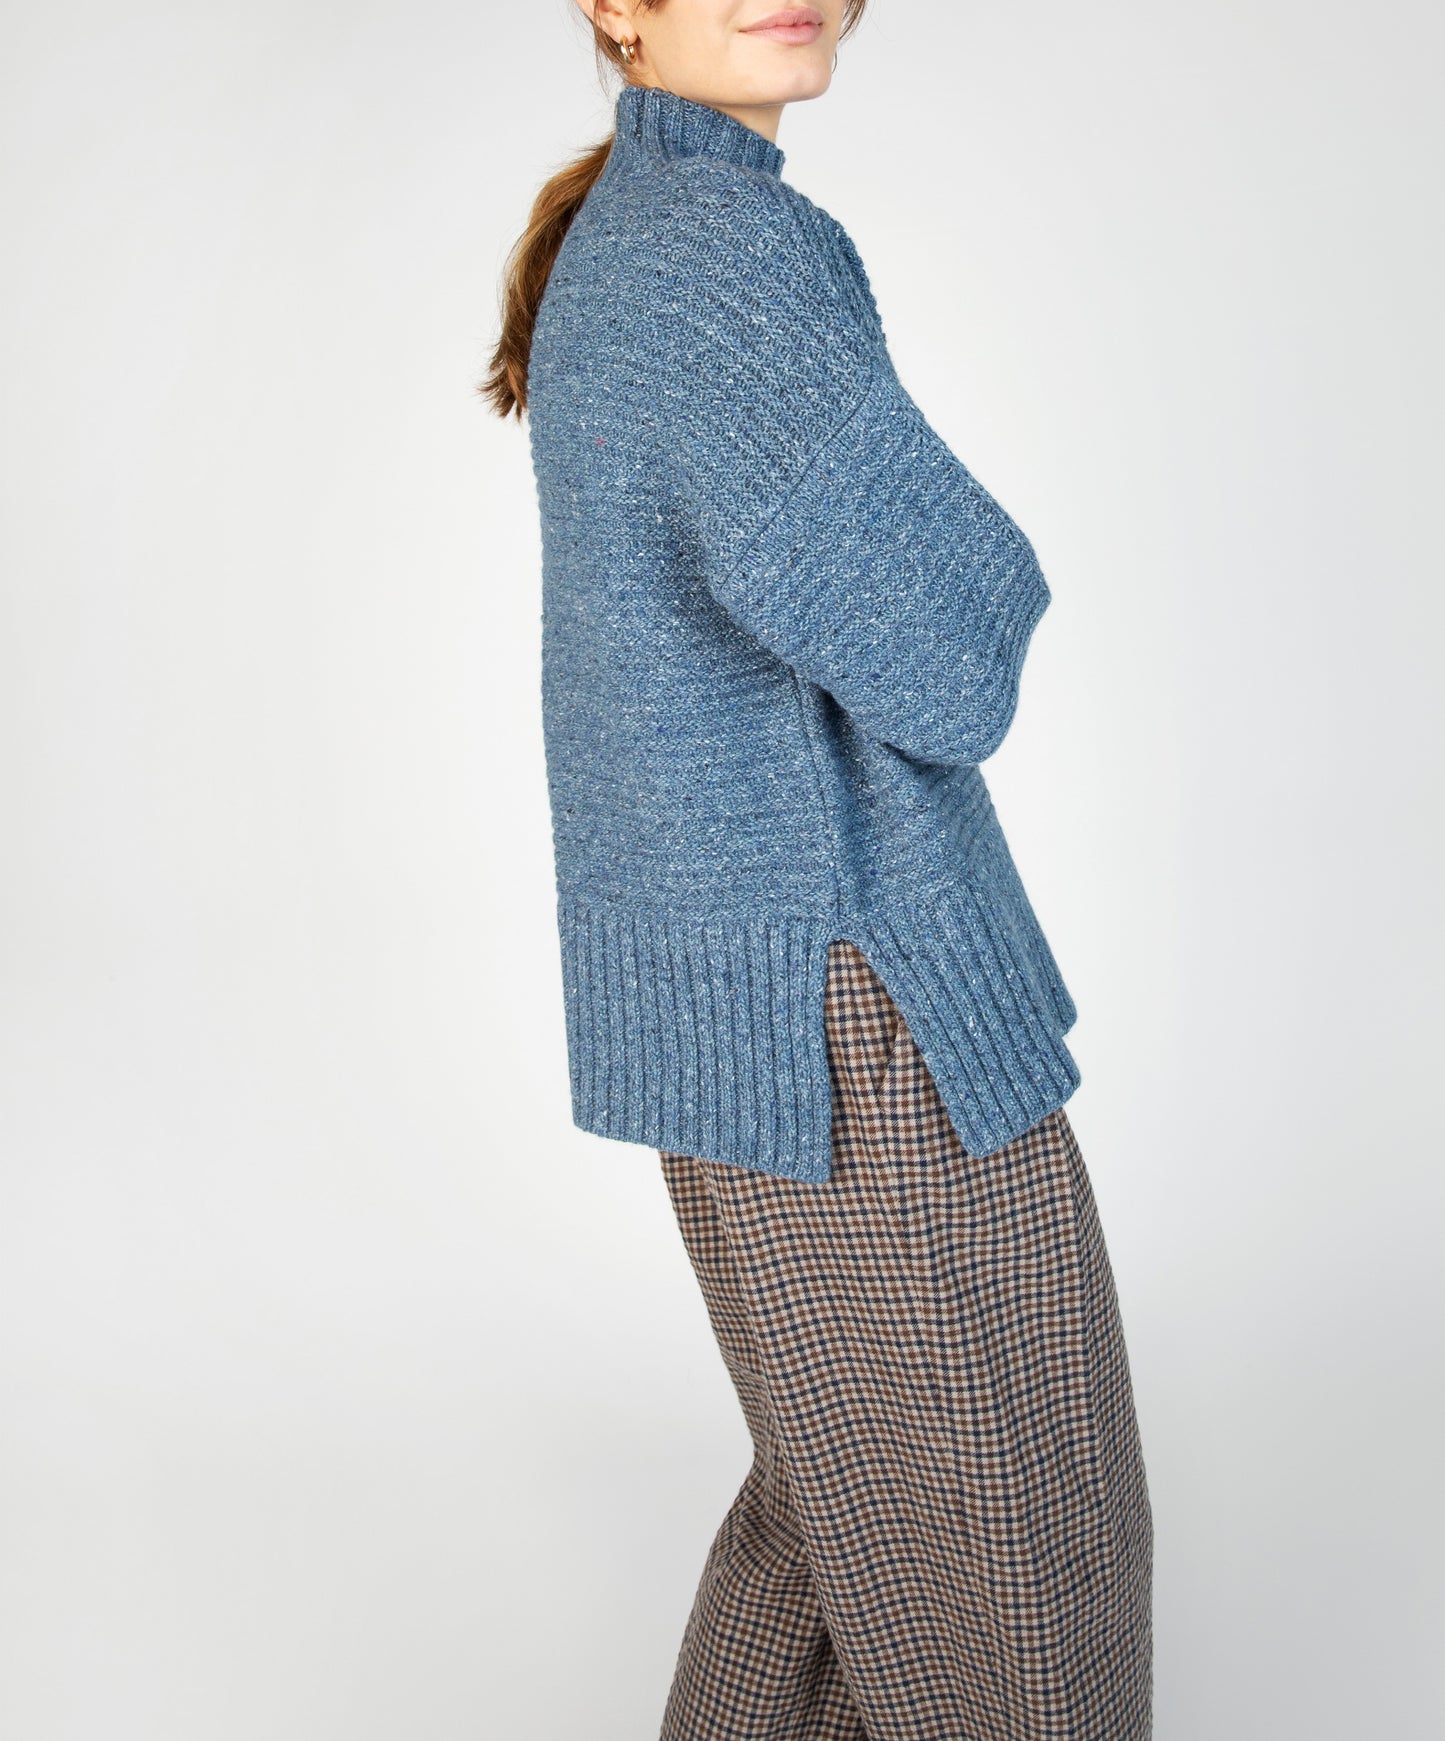 IrelandsEye Knitwear ‘Iris’ Contrast Panel Funnel Neck Sweater Sea Spray